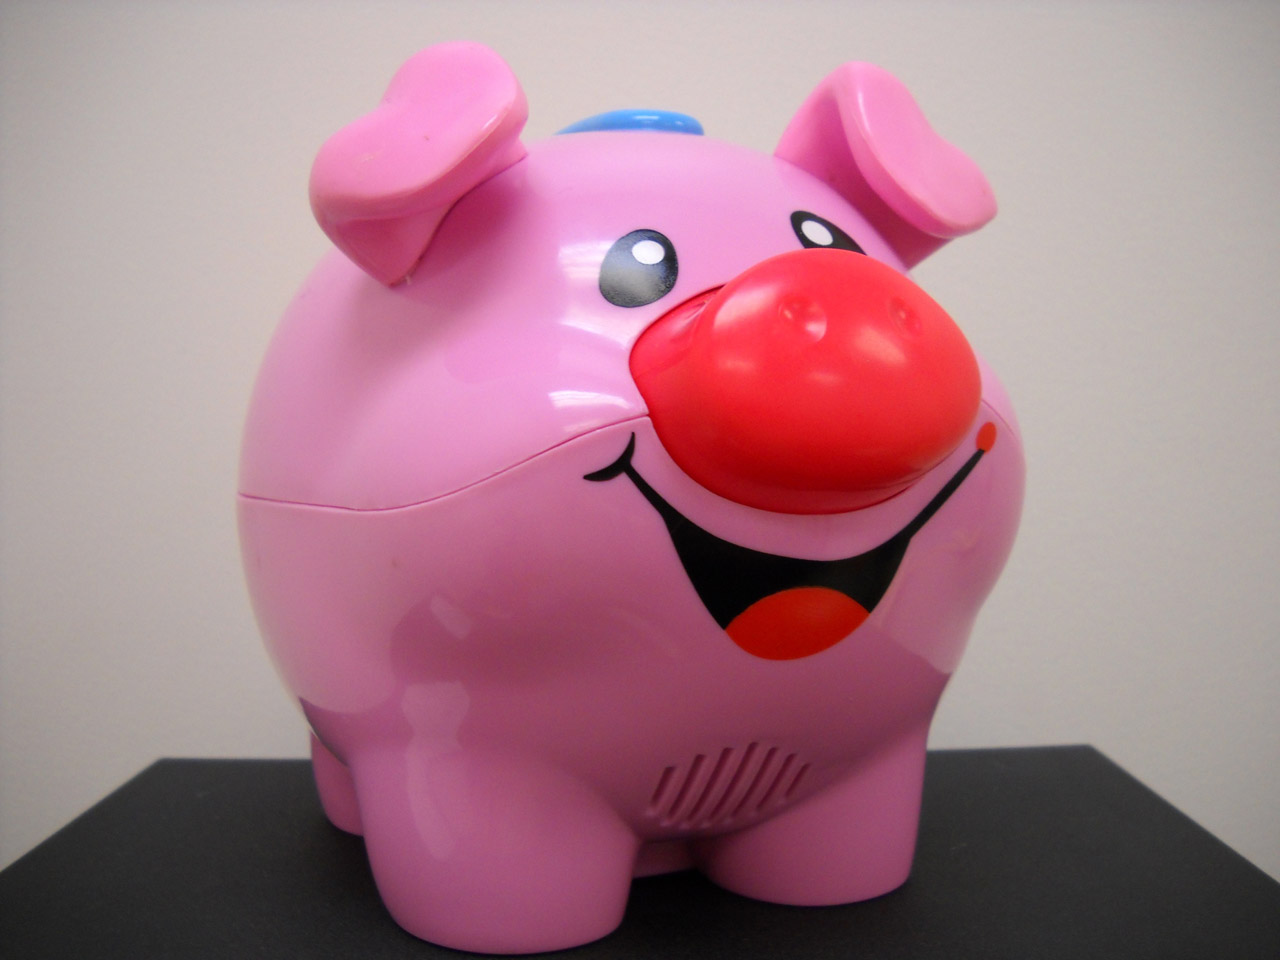 Smiling pink pig toy